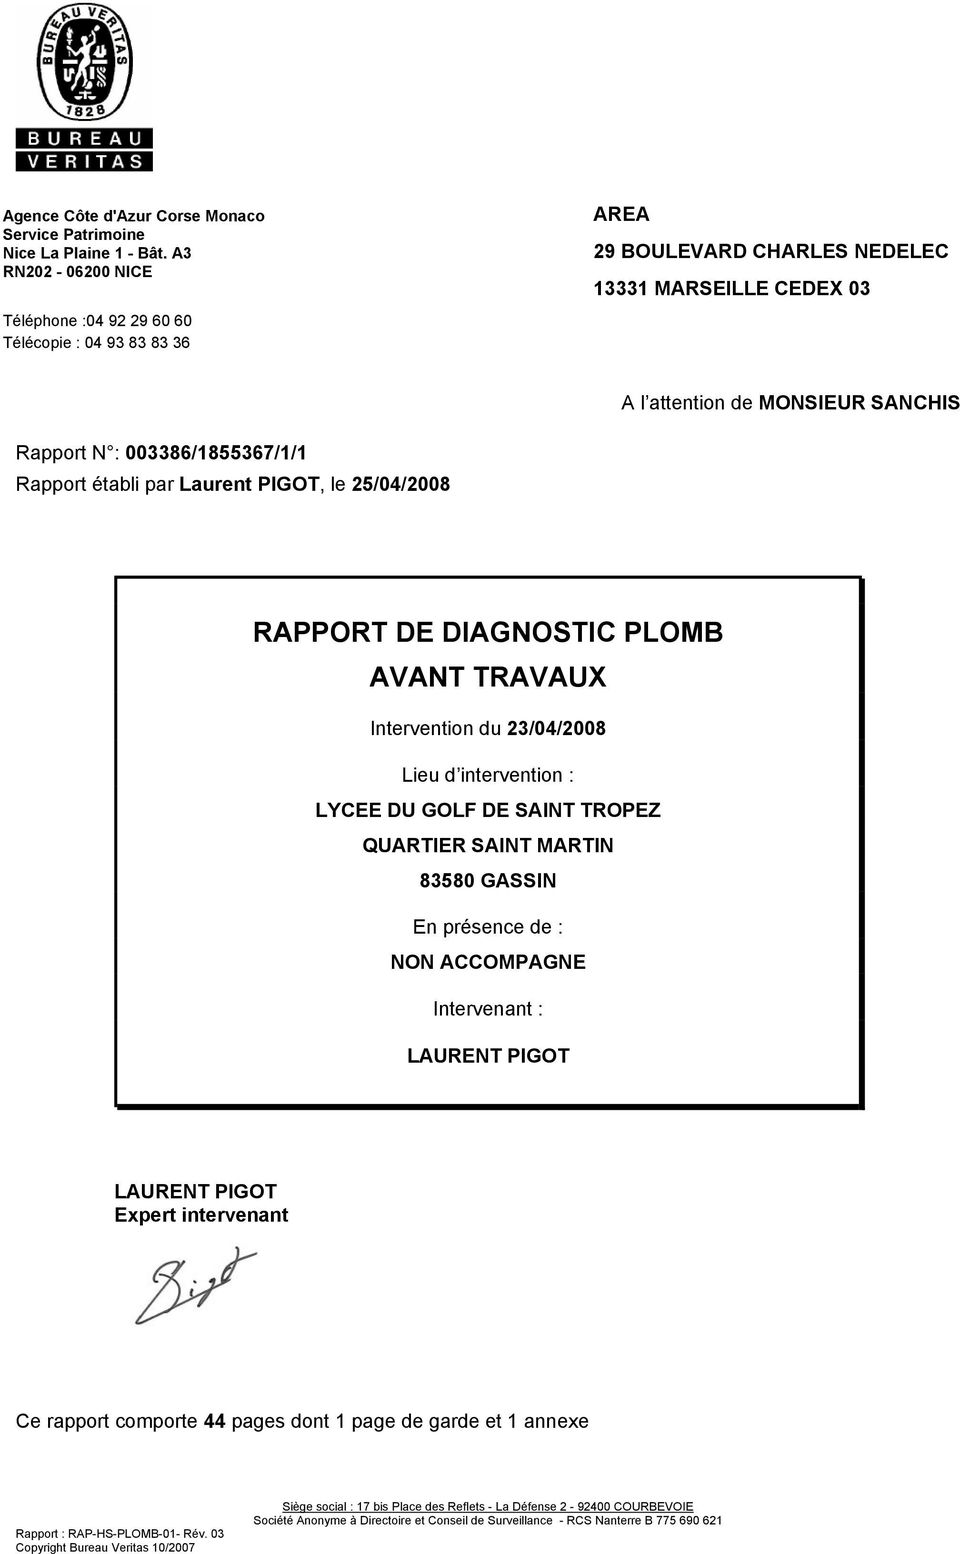 Rapport établi par Laurent PIGOT, le 25/04/2008 RAPPORT DE DIAGNOSTIC PLOMB AVANT TRAVAUX Intervention du 23/04/2008 Lieu d intervention : LYCEE DU GOLF DE SAINT TROPEZ QUARTIER SAINT MARTIN 83580